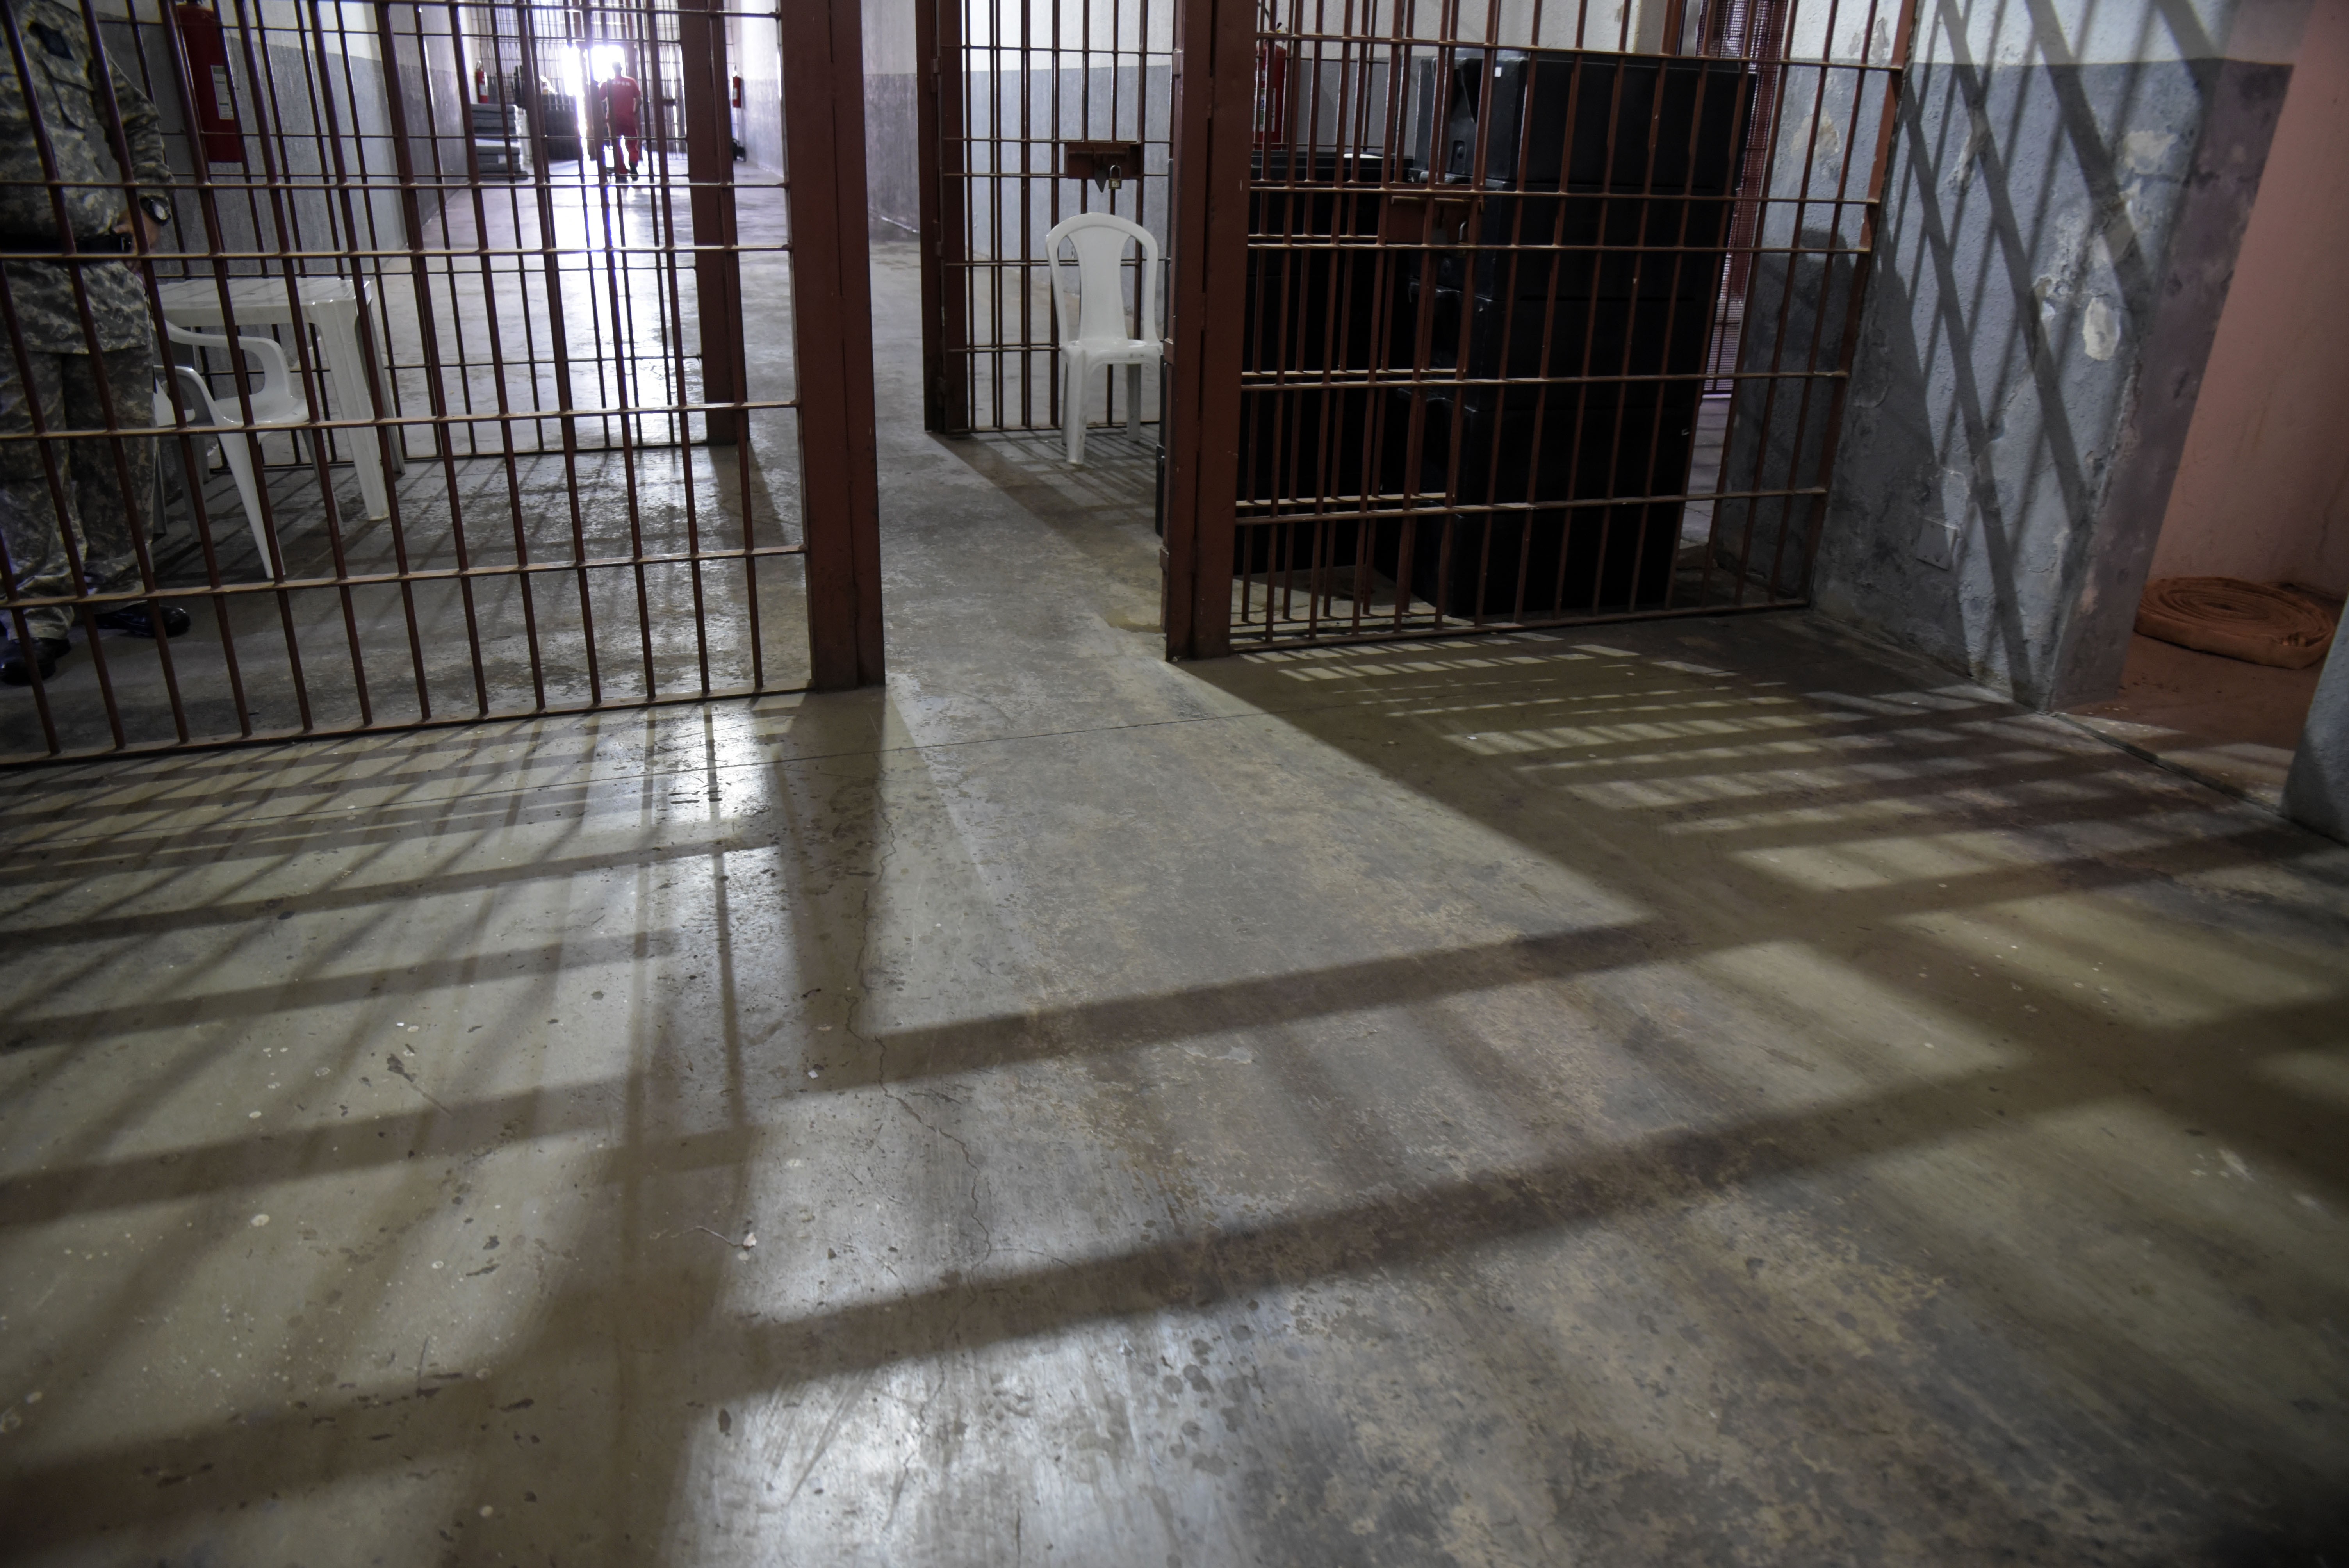 MPMG diz que facção dividia detentos em grupos para controlar prisão em Uberlândia: tabacaria, finanças, cadastro e comunicação